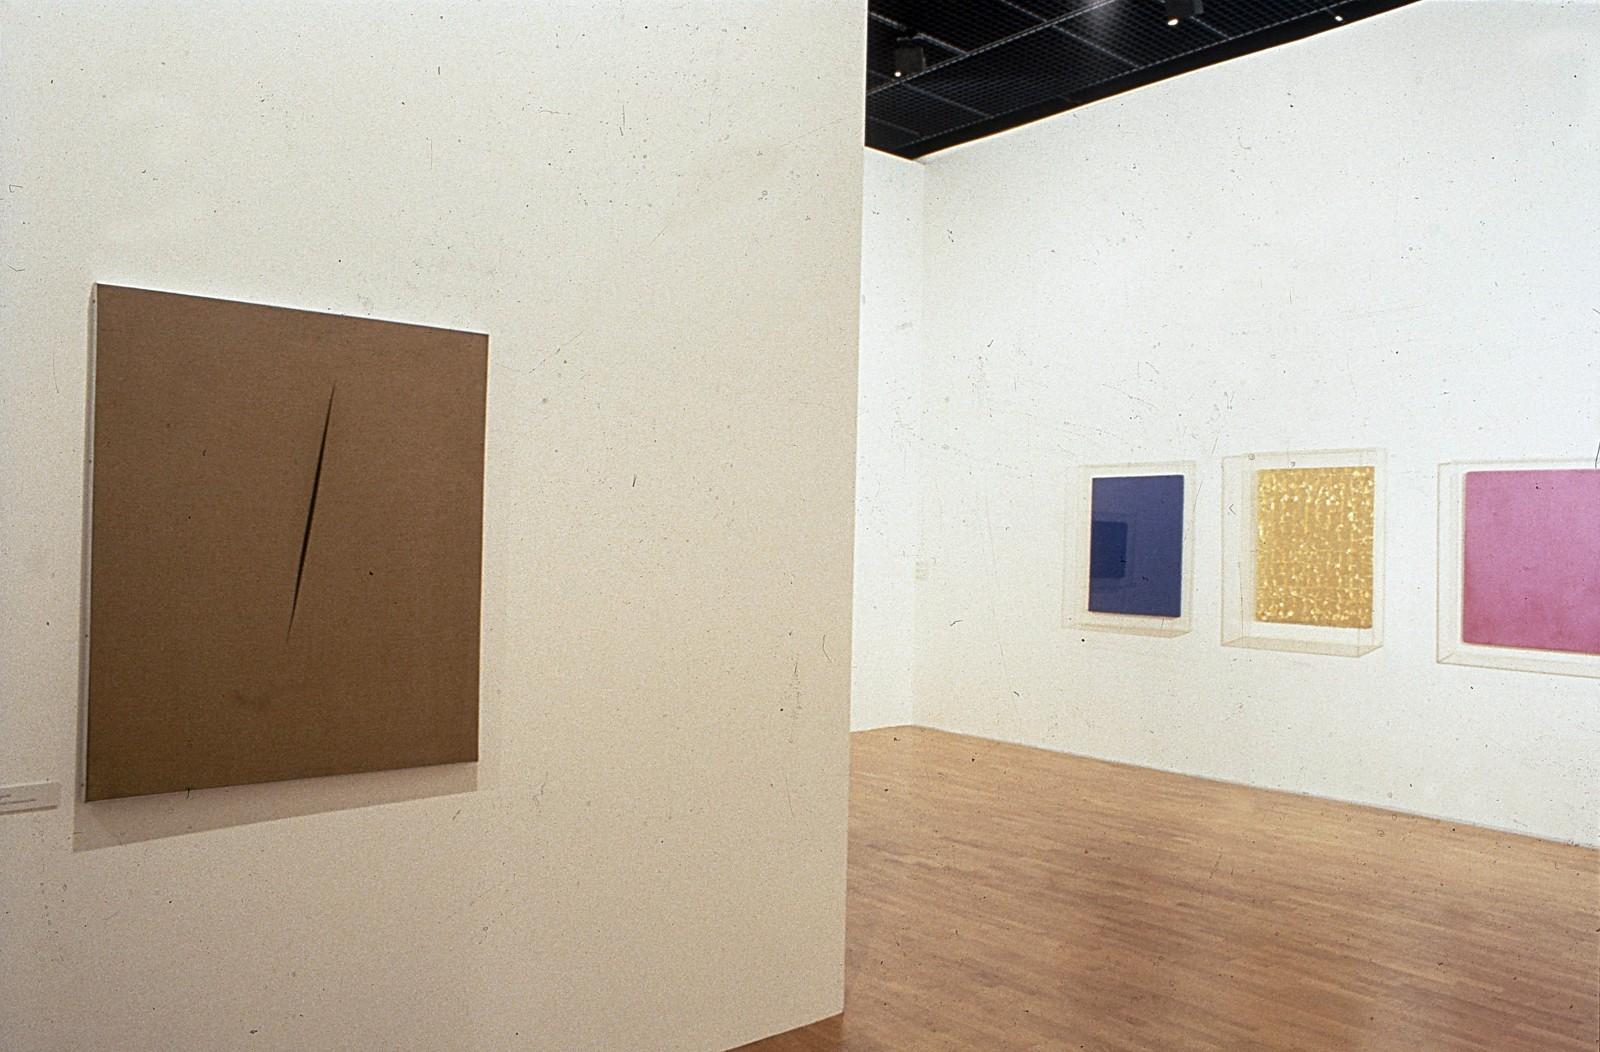 View of the exhibition "La Couleur seule : l'expérience du monochrome", Musée Saint-Pierre art contemporain, 1988 (IKB 68, MG 8, MP 19)